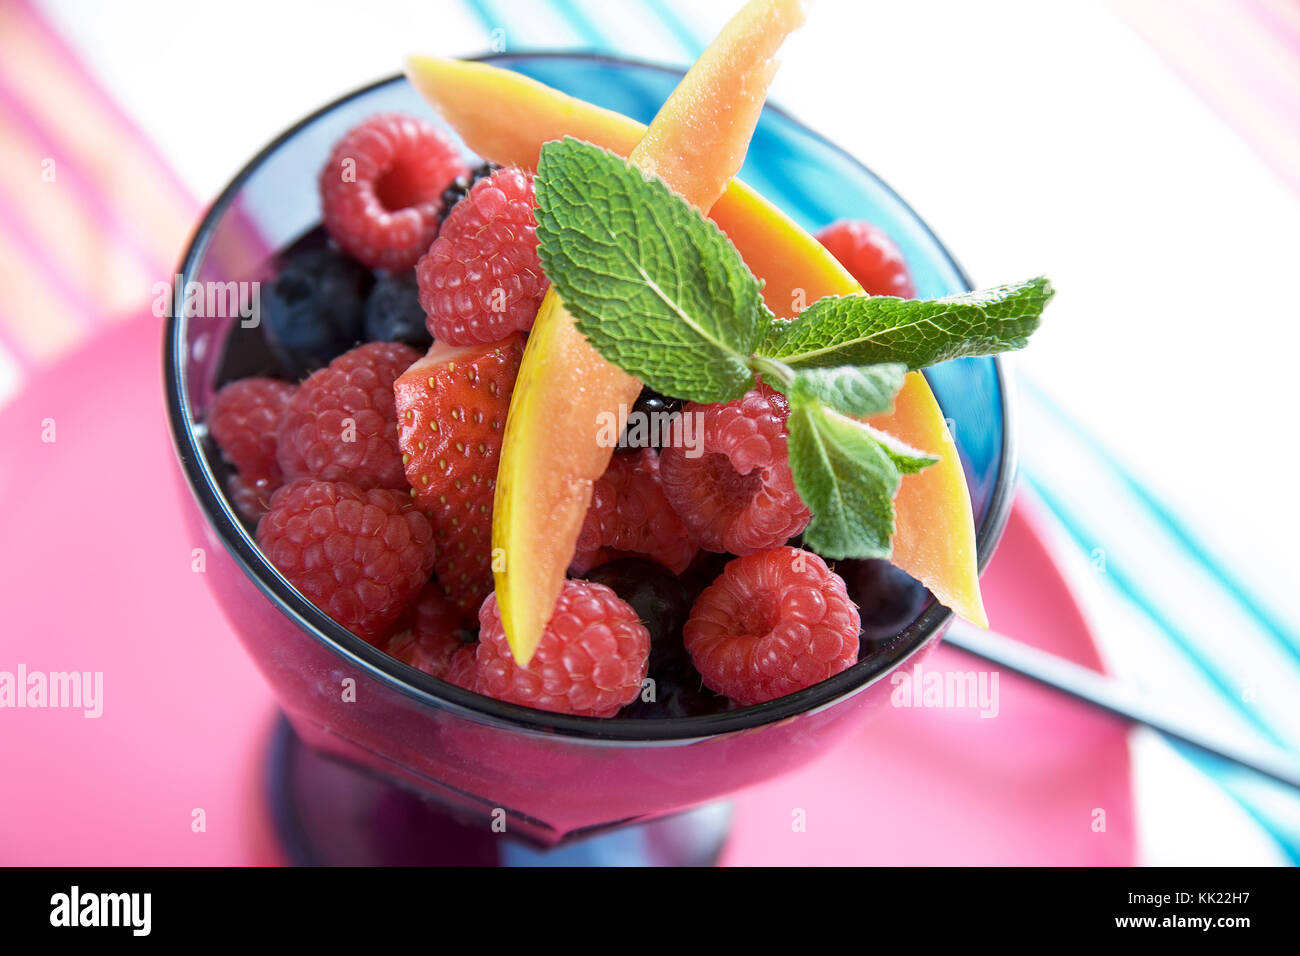 Himbeere, Erdbeere, Heidelbeere und Mango Salat von frischen Früchten garniert mit frischer Minze im Glas Schüssel auf bunte Tischdecke. Stockfoto